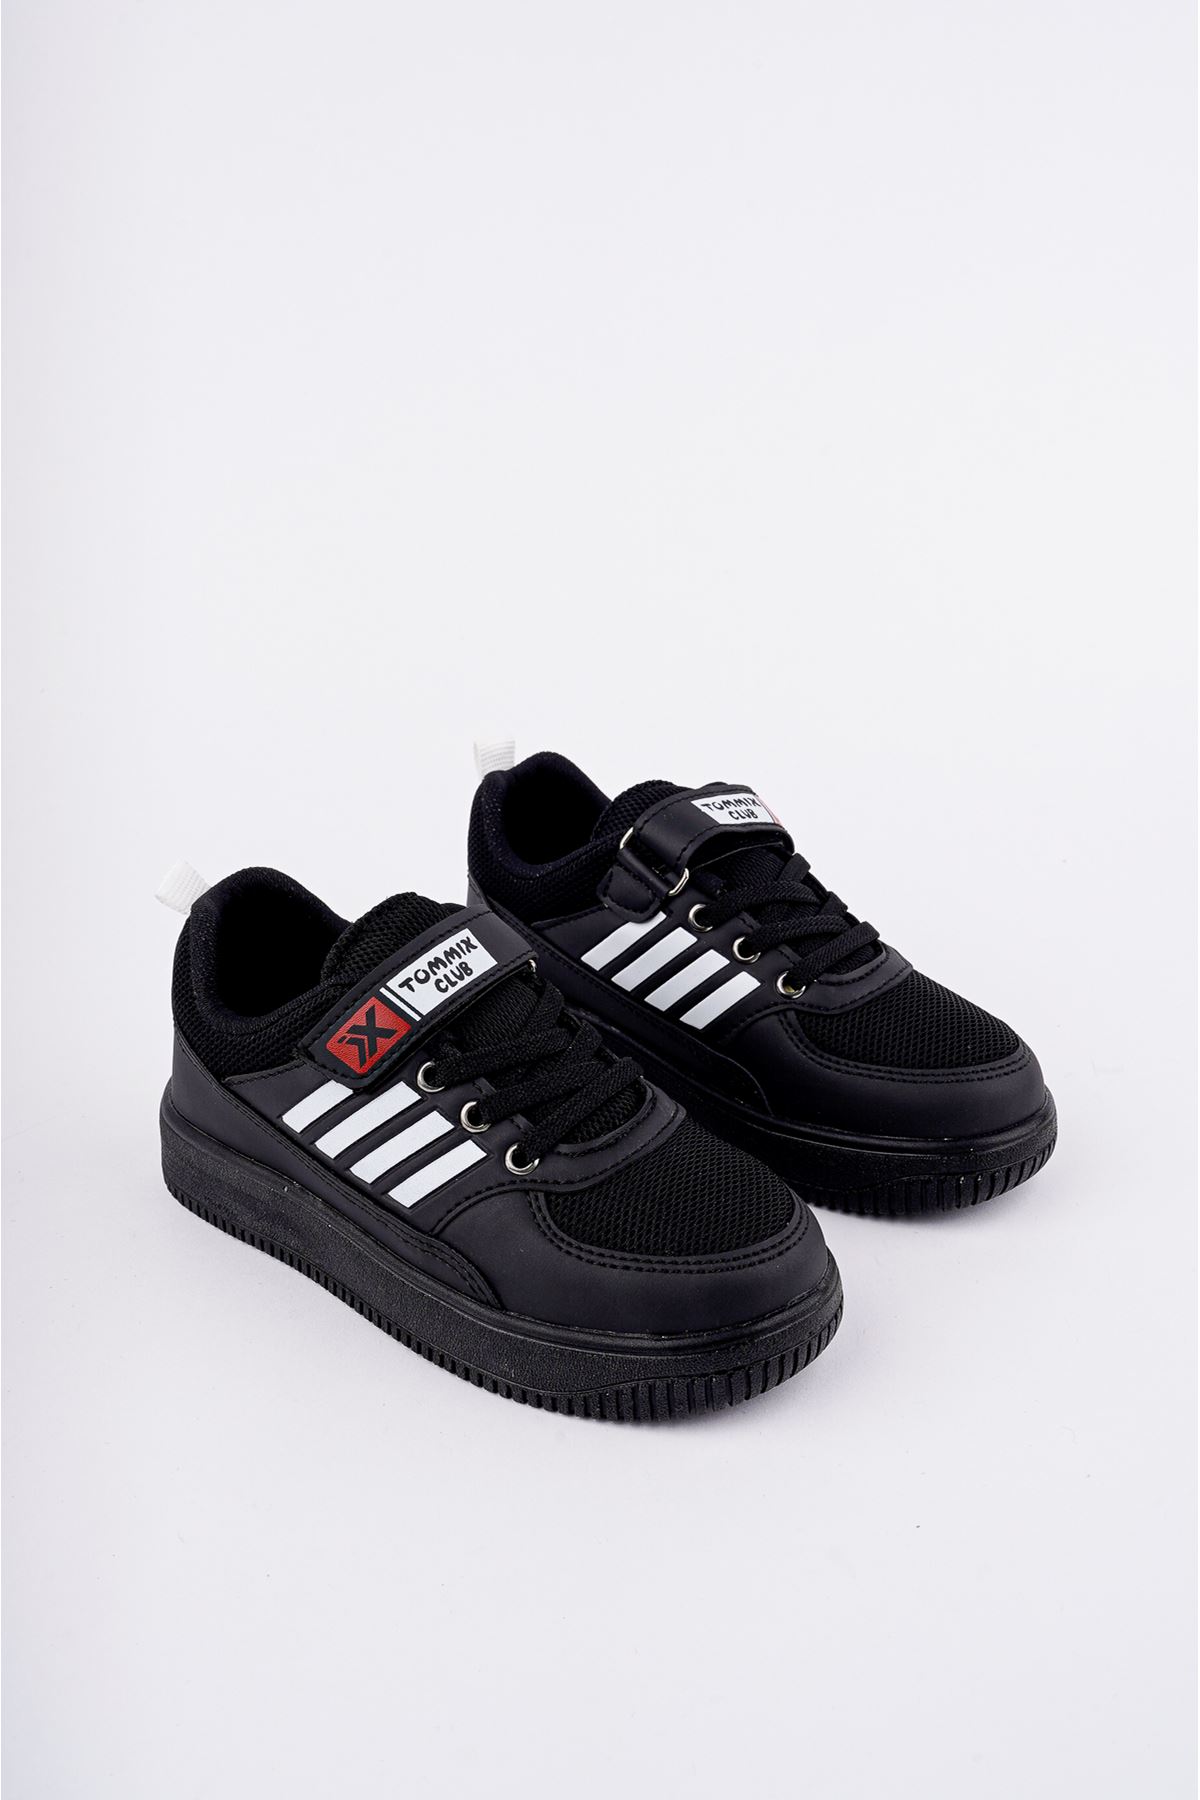 Velcro Black and White Stripe Sole Black Children's Sneakers